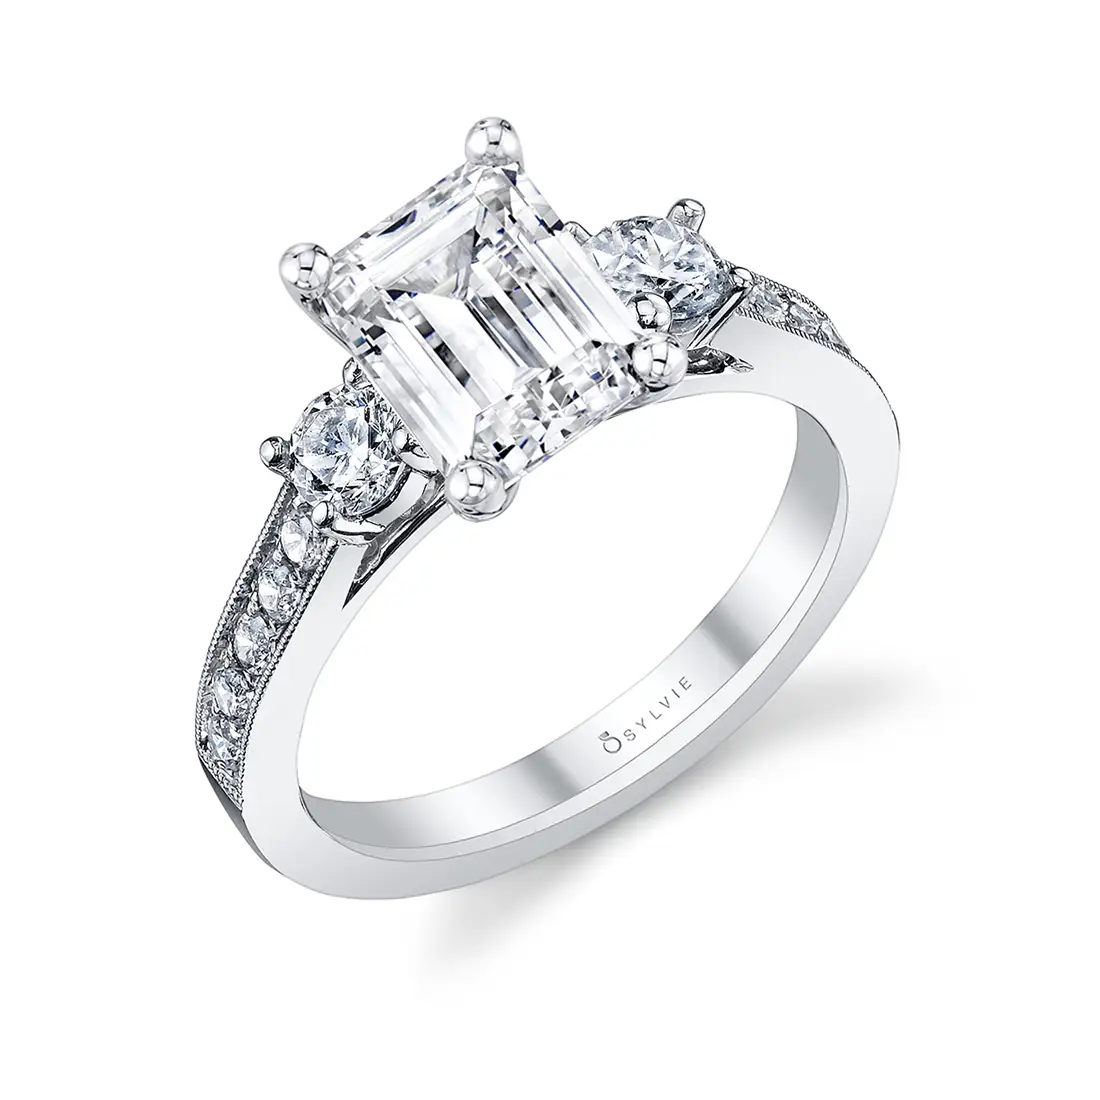 3 Stone Diamond and Platinum Ring – AKA Bespoke